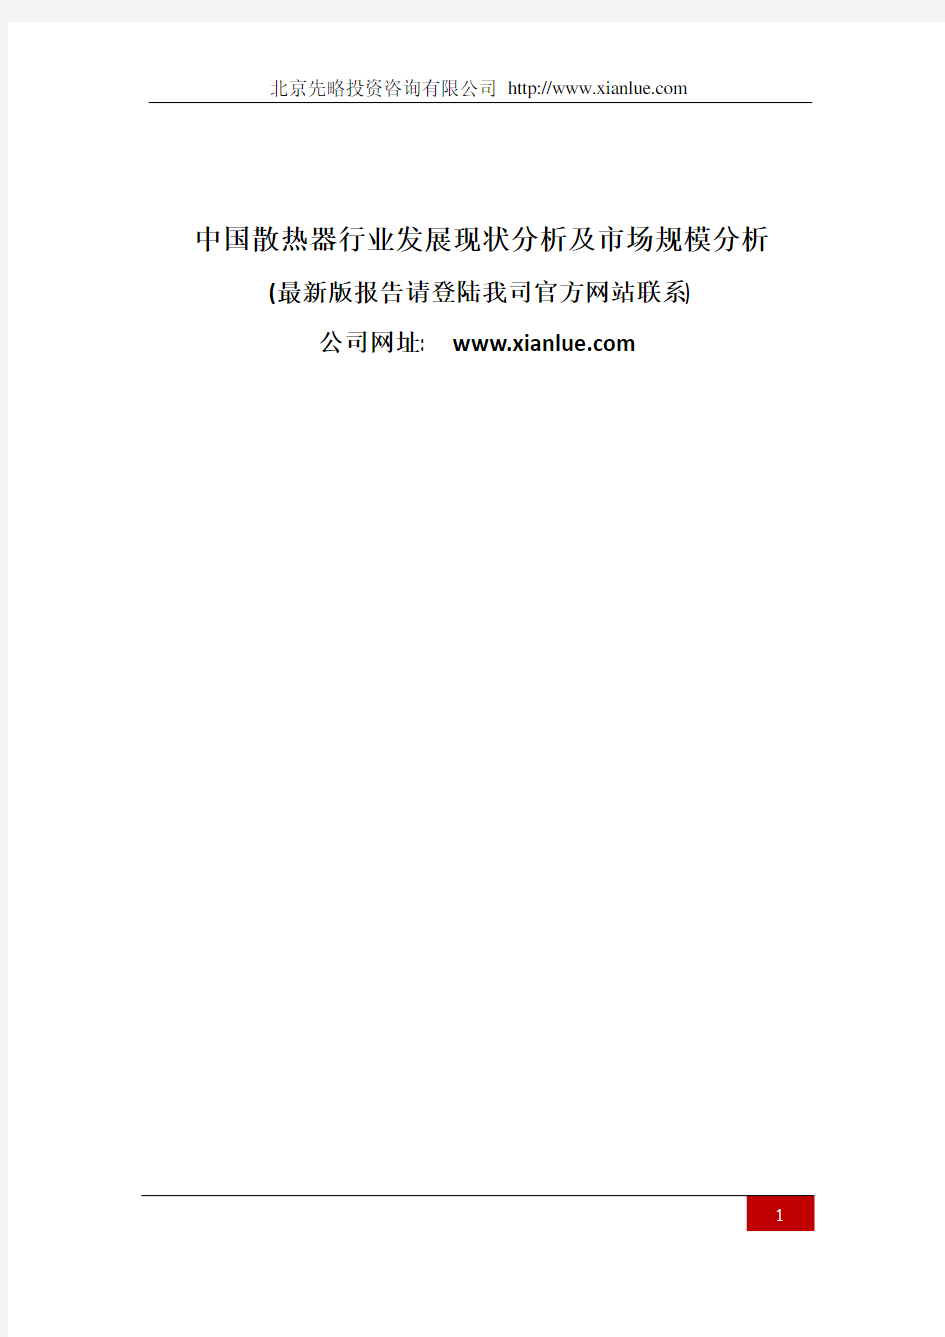 中国散热器行业发展现状分析及市场规模分析(报告精选)